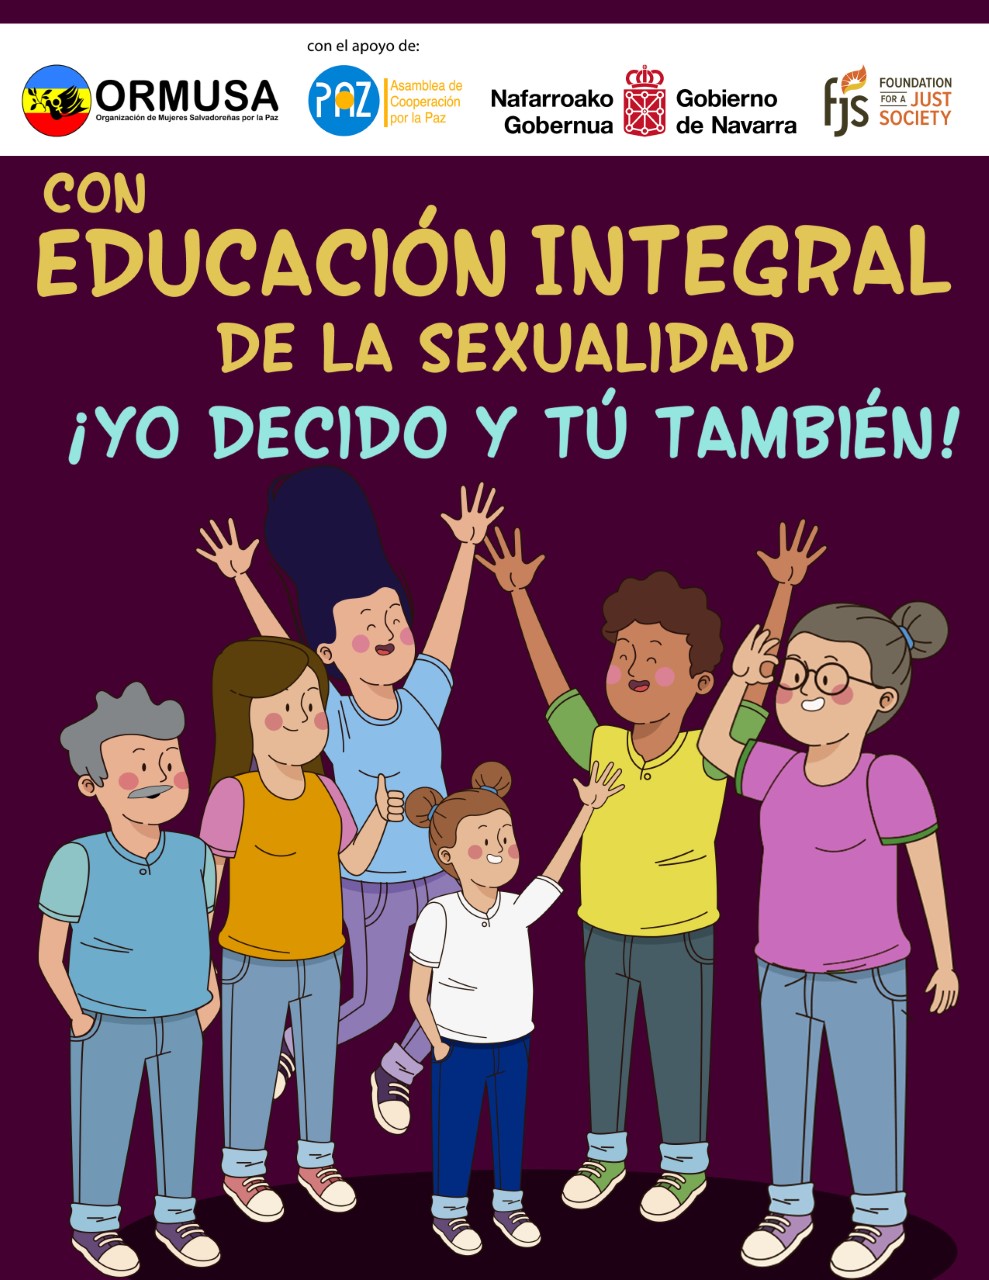 Campaña de Educación Integral de la Sexualidad